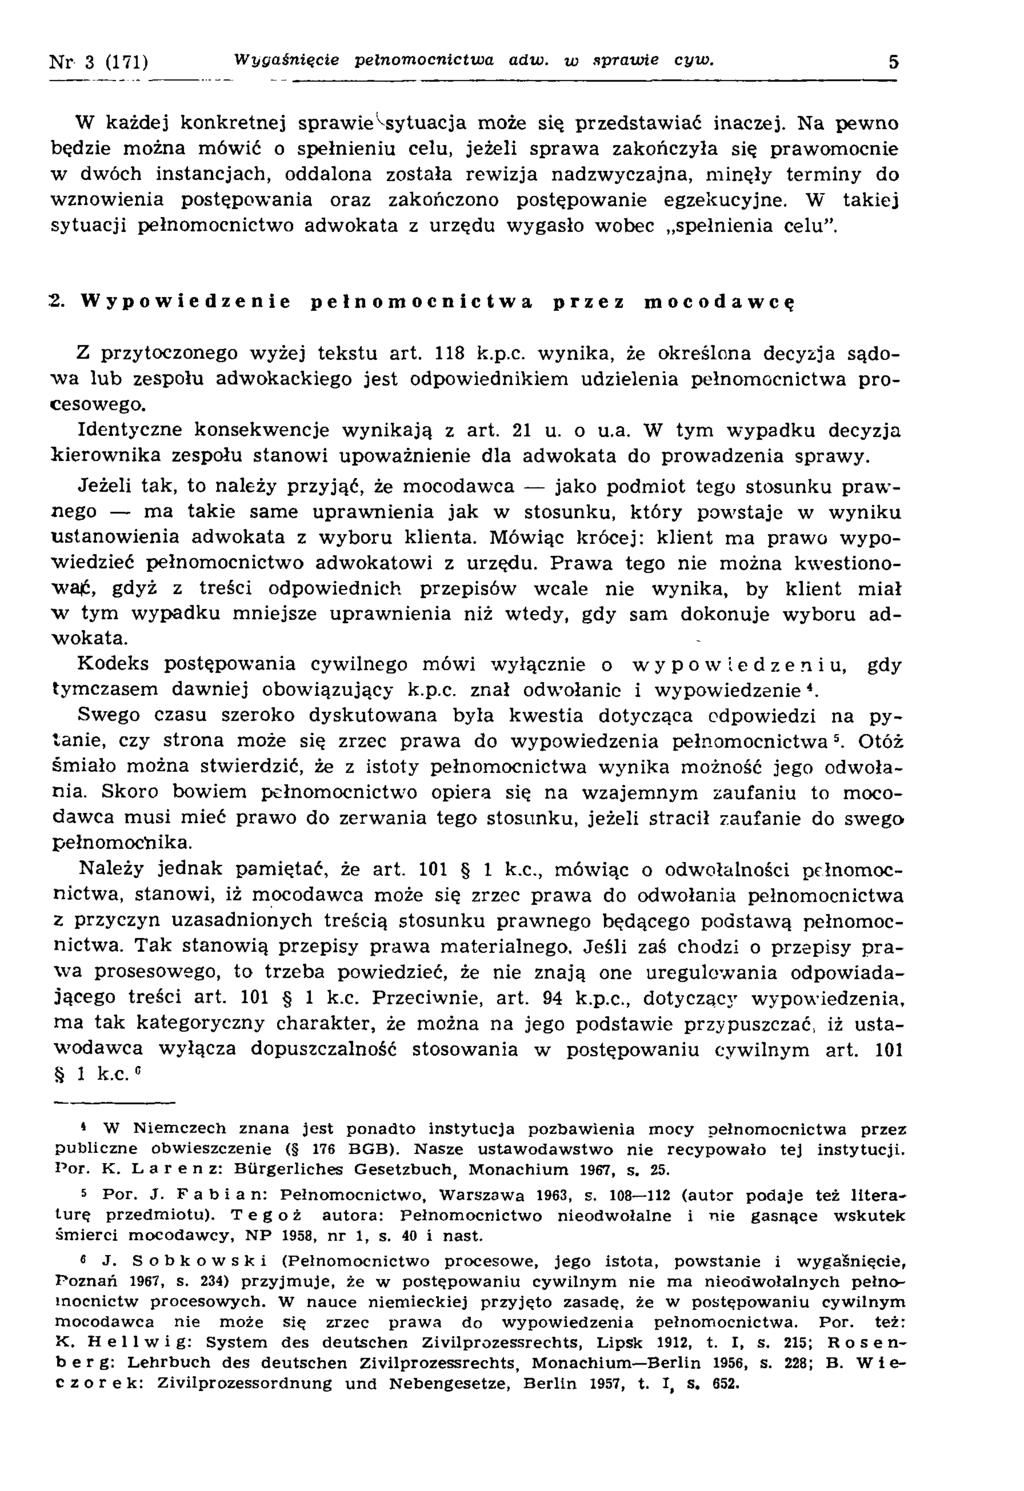 Zdzisław Krzemiński Wygaśnięcie pełnomocnictwa adwokata z urzędu w sprawie  cywilnej. Palestra 16/3(171), PDF Free Download